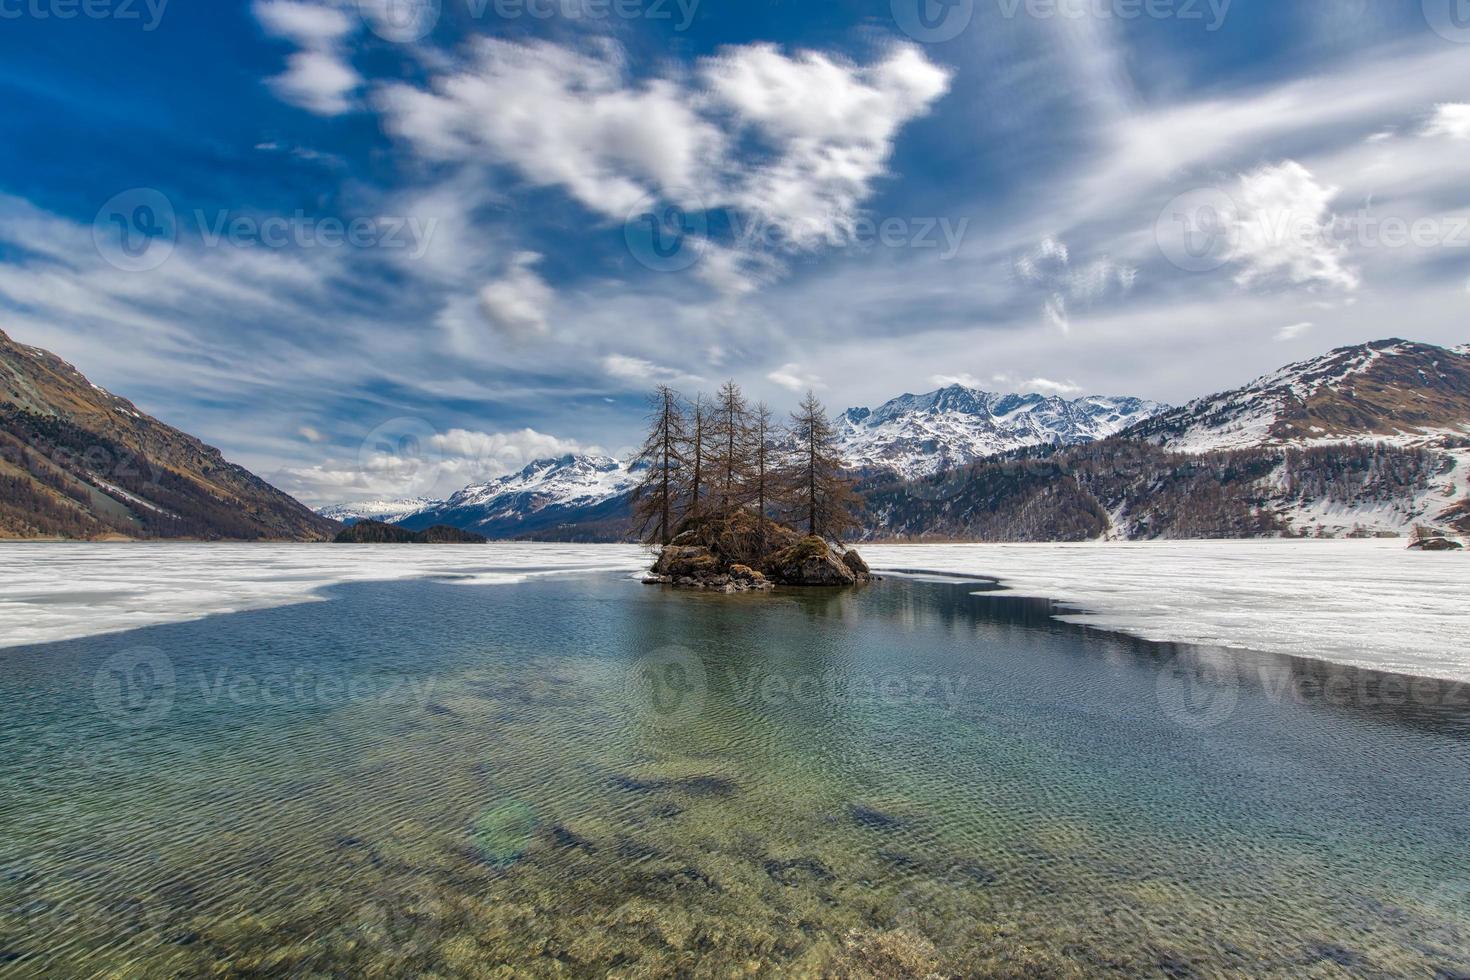 deshielo en el lago de los alpes suizos. pequeño islote foto